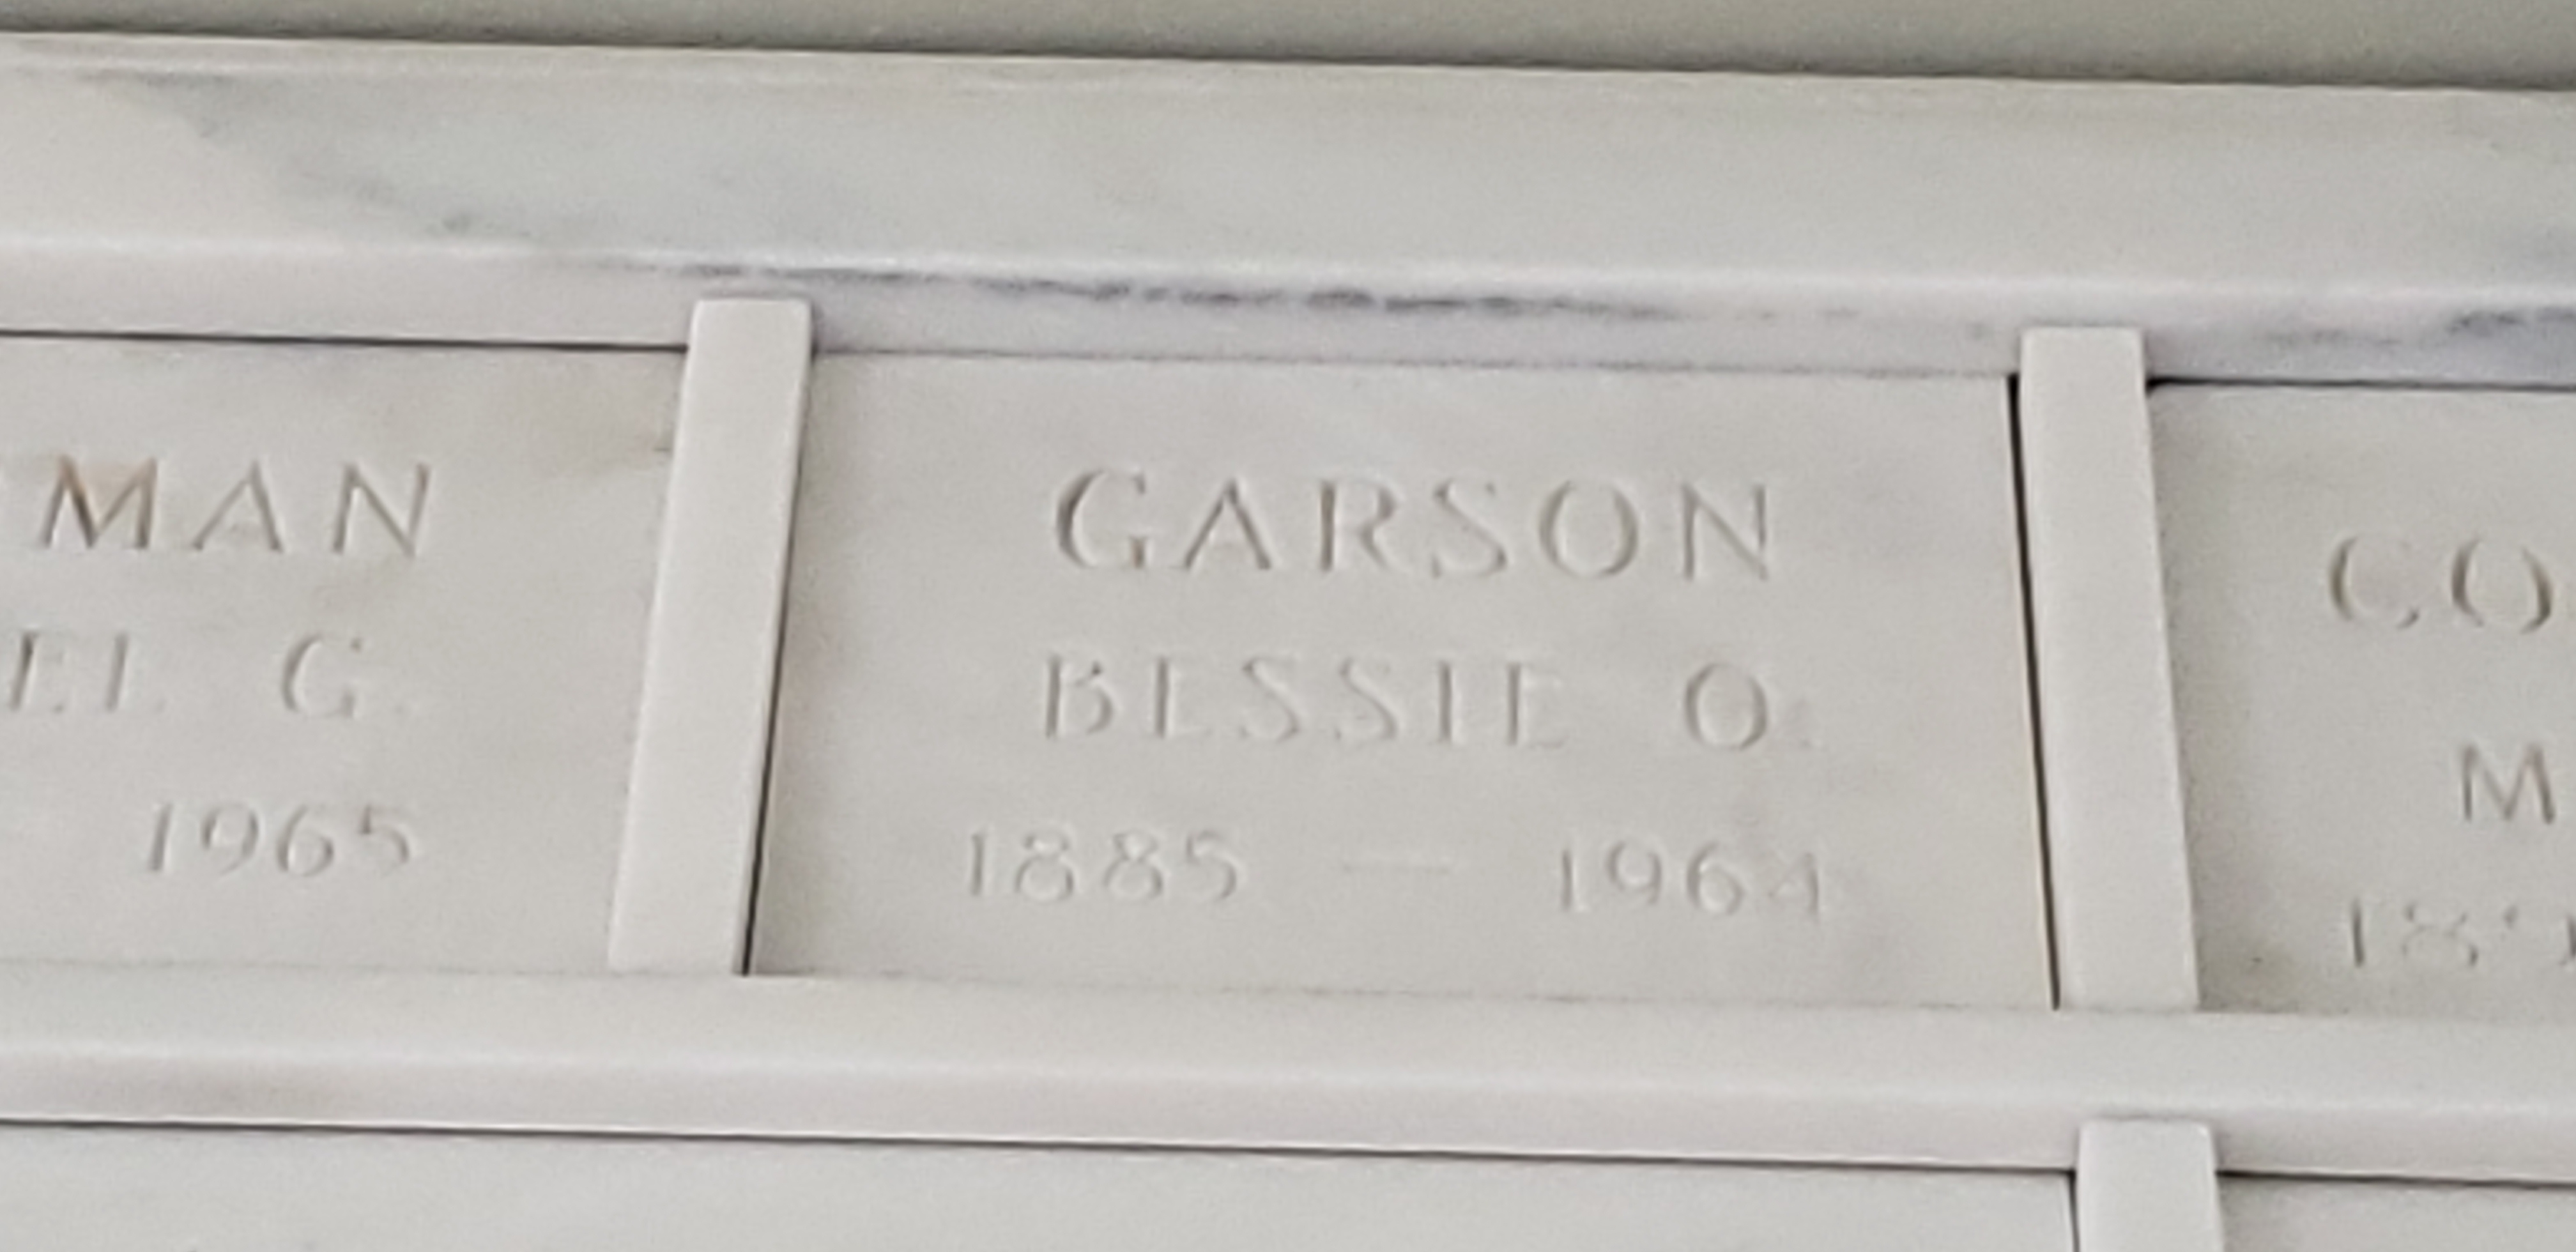 Bessie O Garson